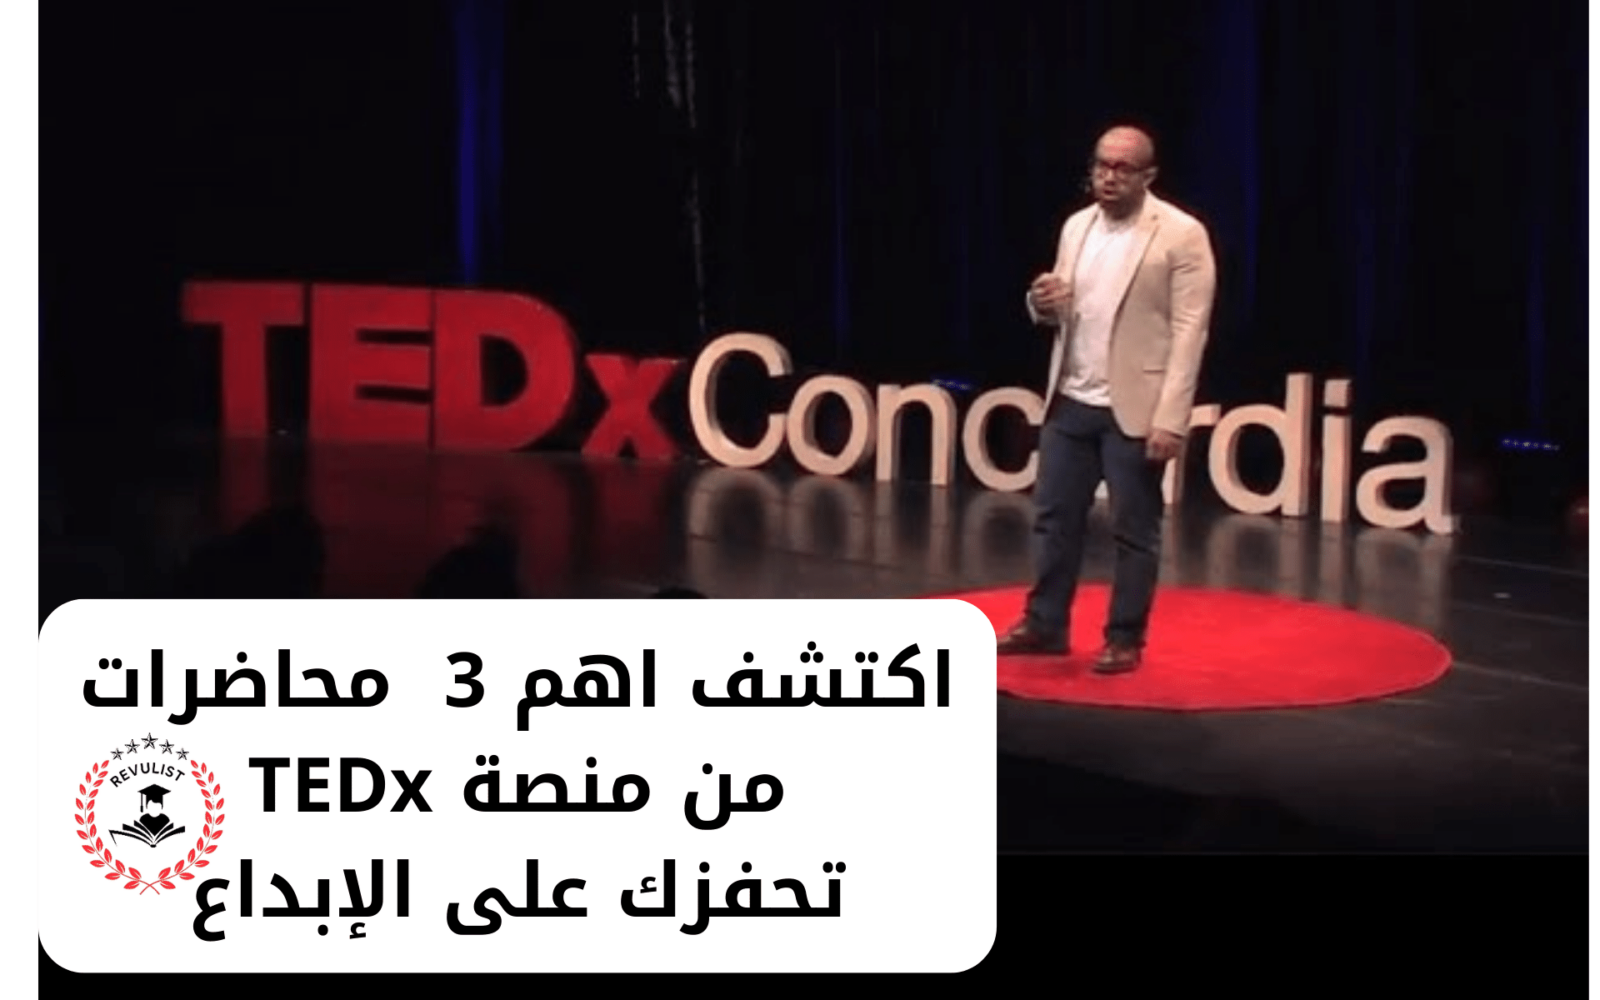 محاضرات منصة TEDx